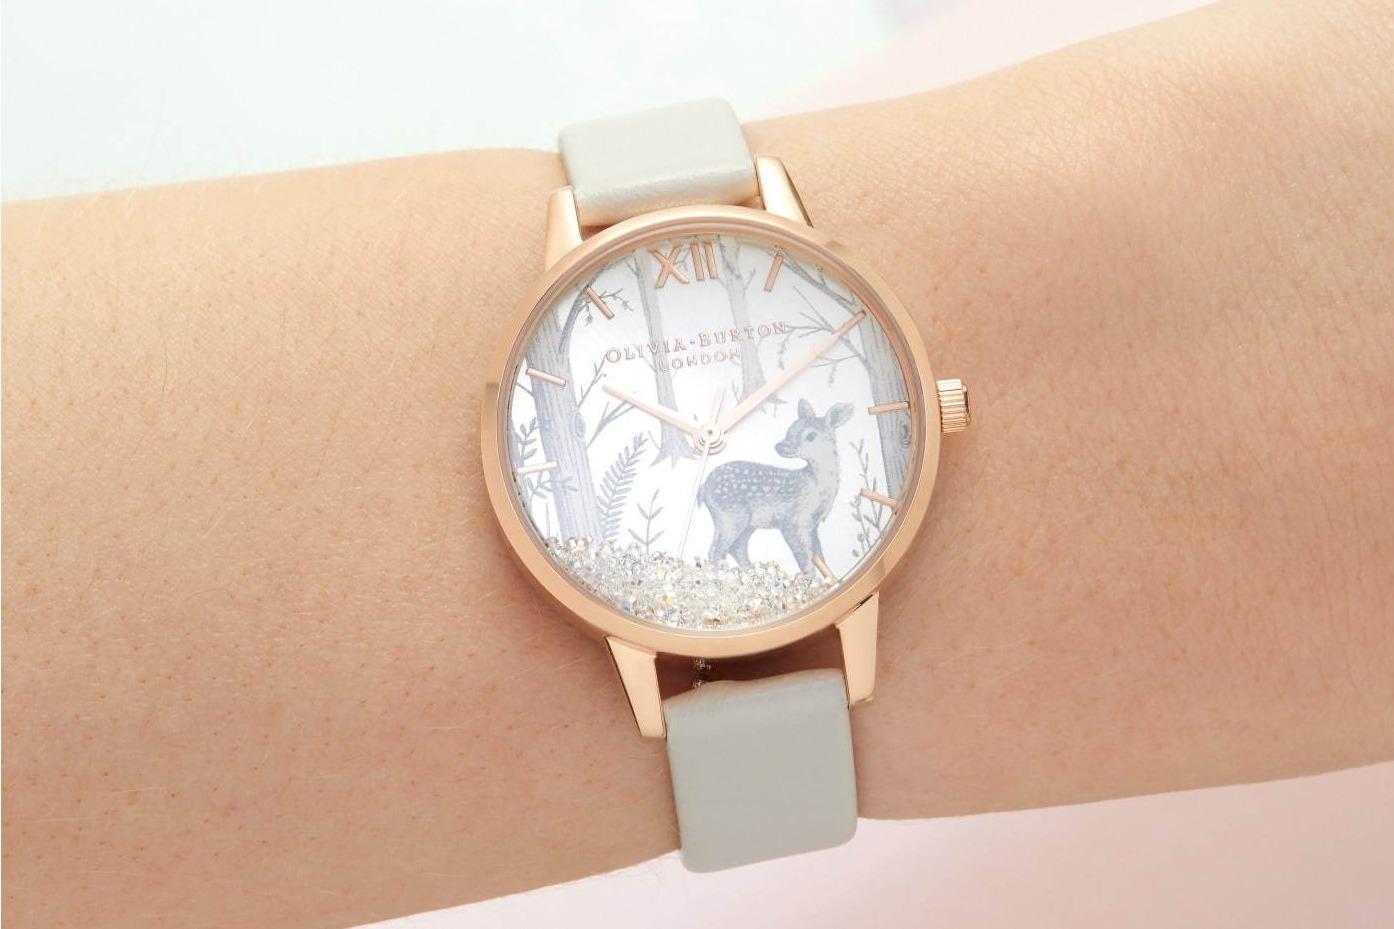 オリビア・バートン“スノードーム”型アニマル腕時計、スワロフスキークリスタルがシャラシャラ踊る 